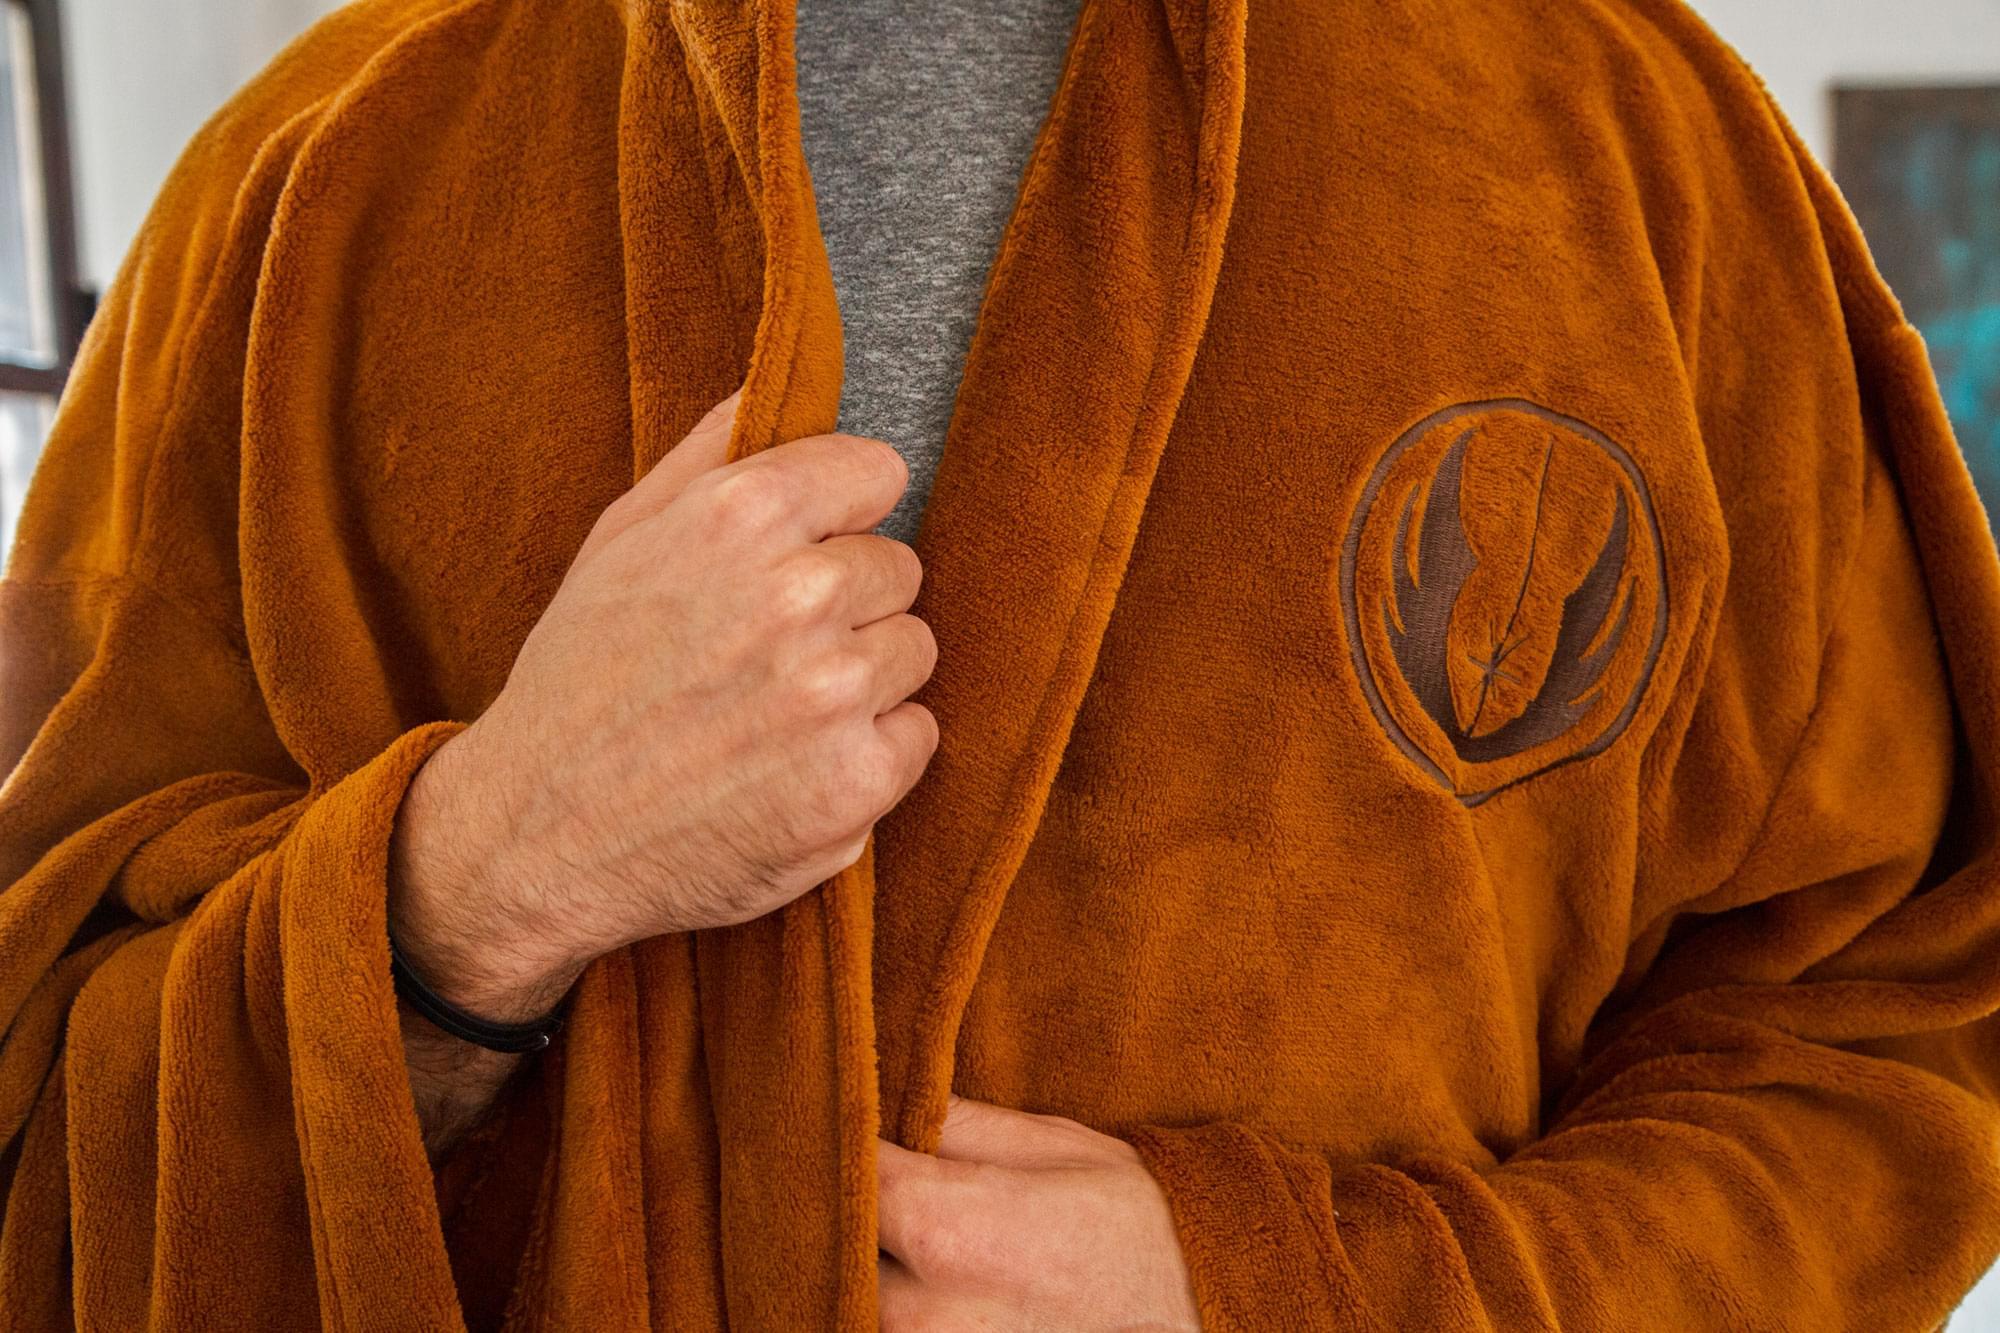 Where To Buy A Jedi Robe